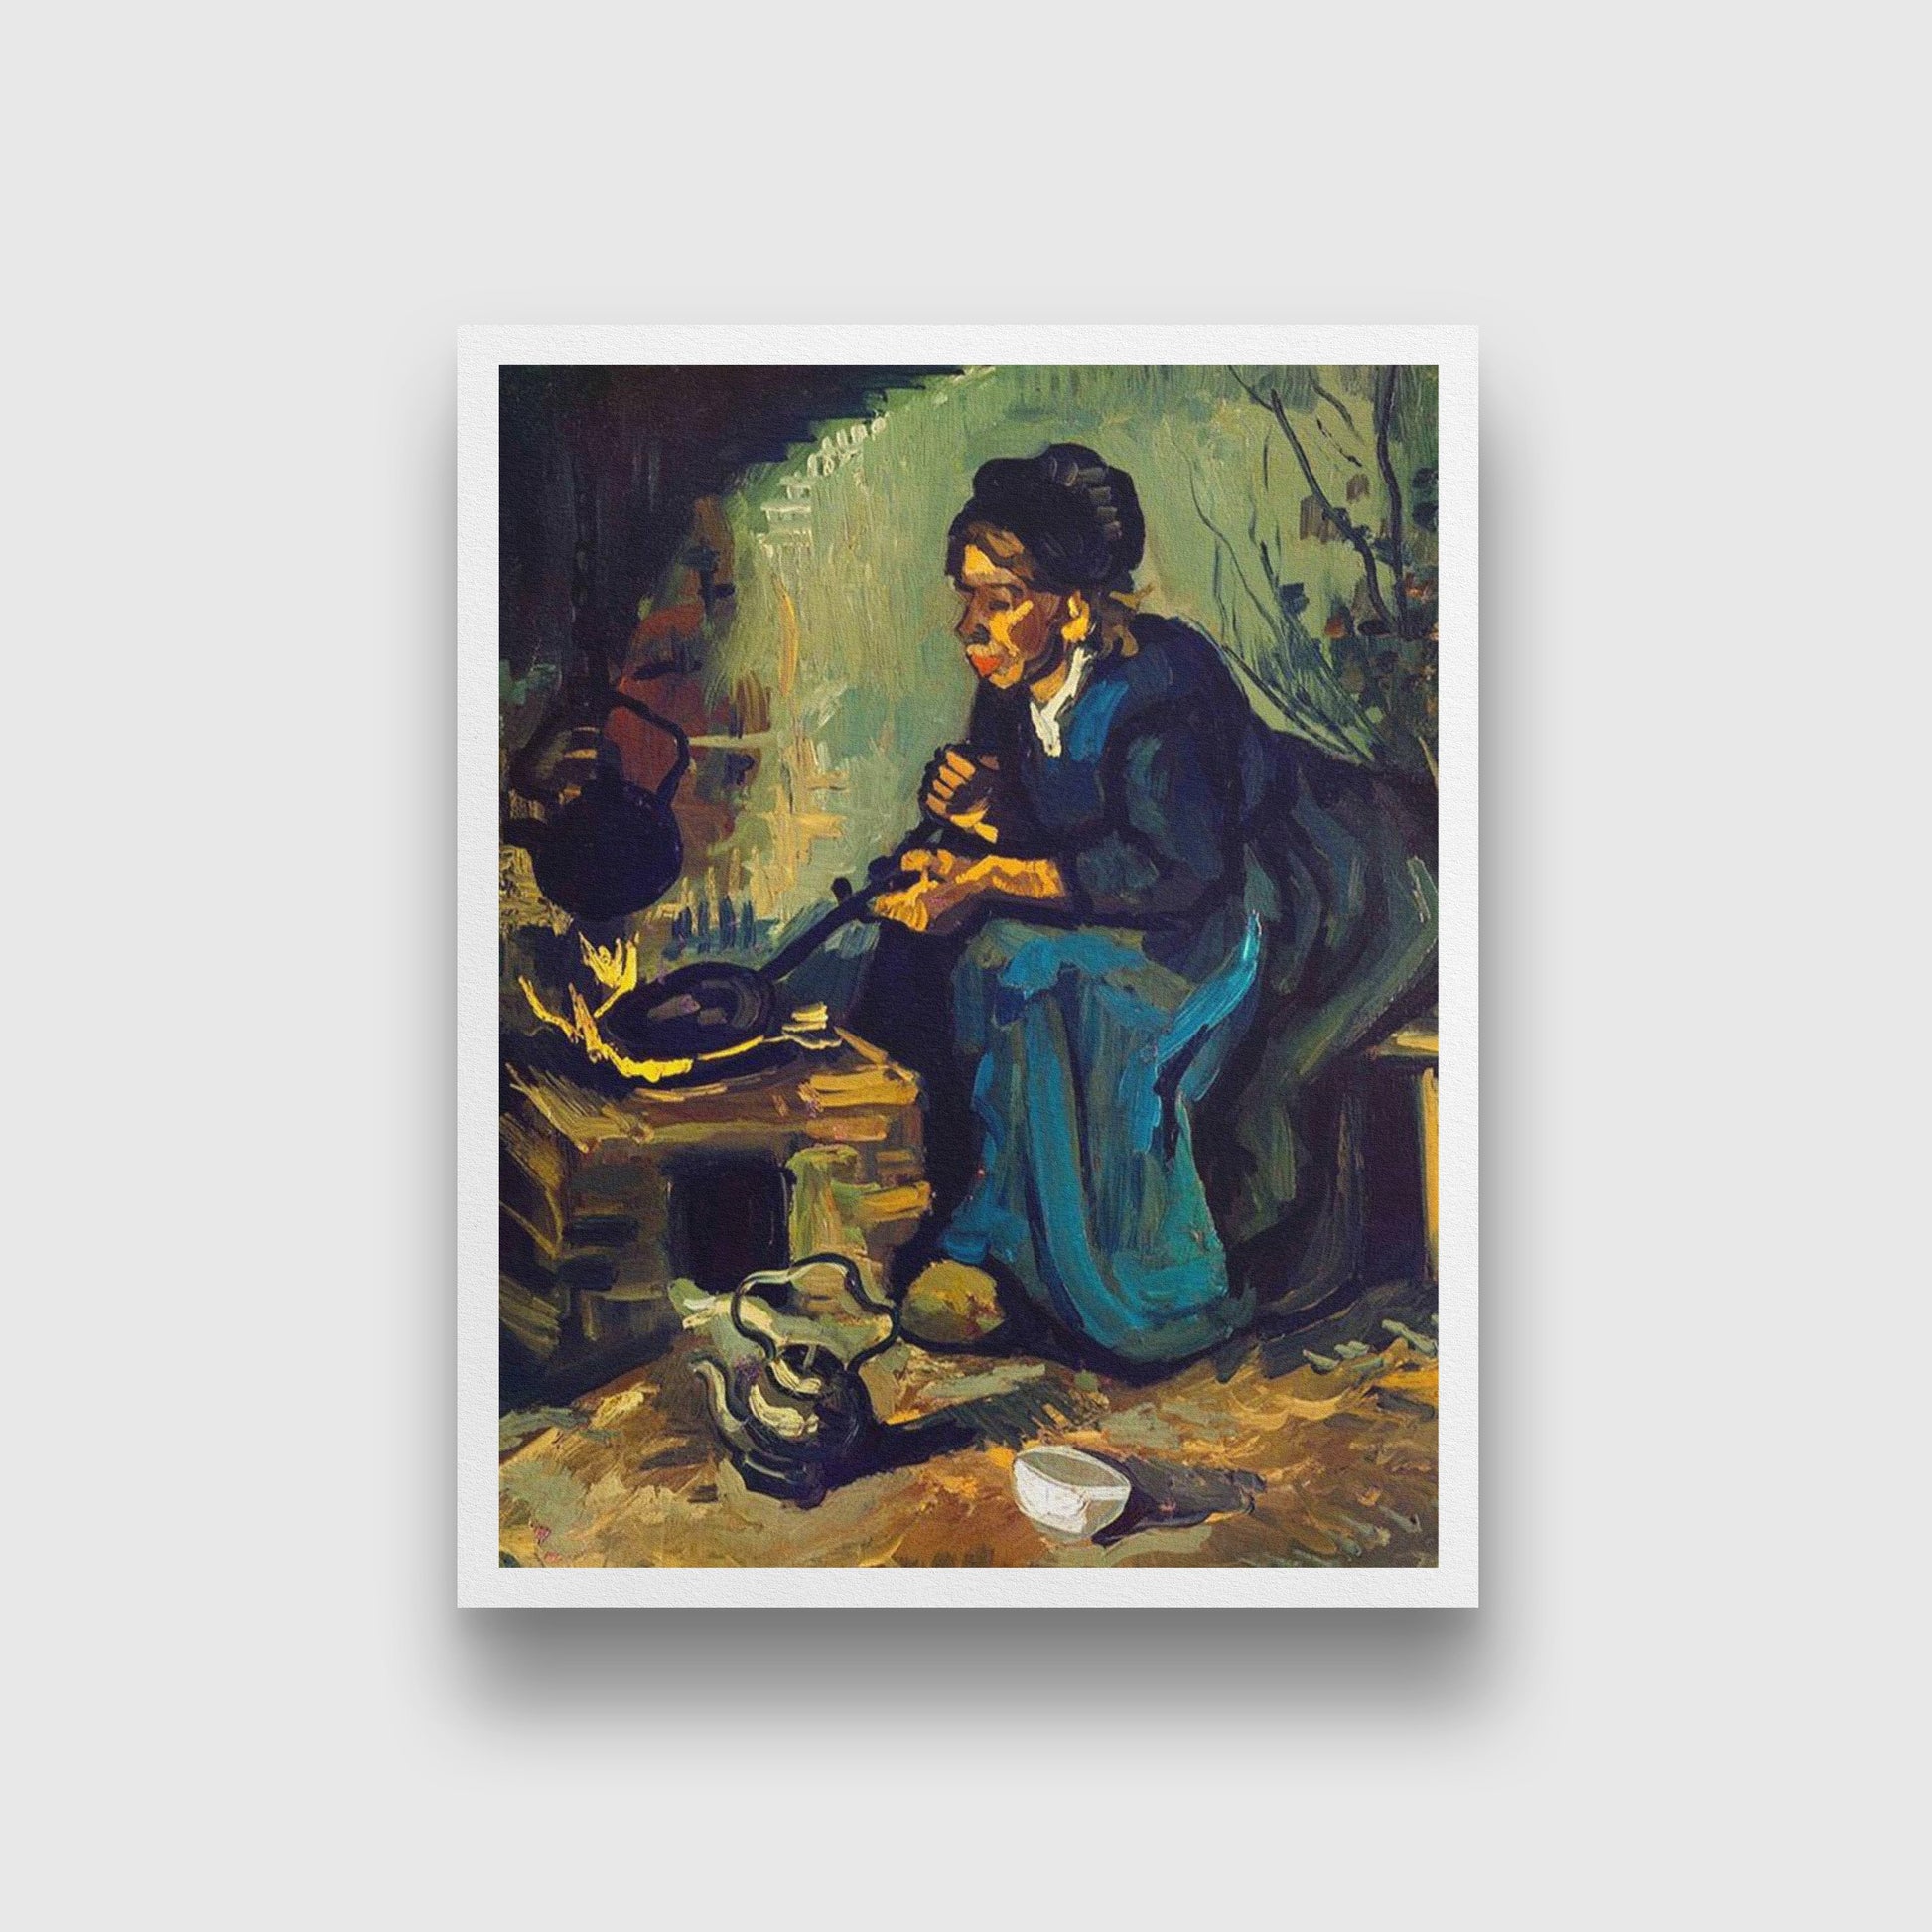 Peasant Woman Cooking by a Fireplace By Van Gogh Painting - Meri Deewar - MeriDeewar